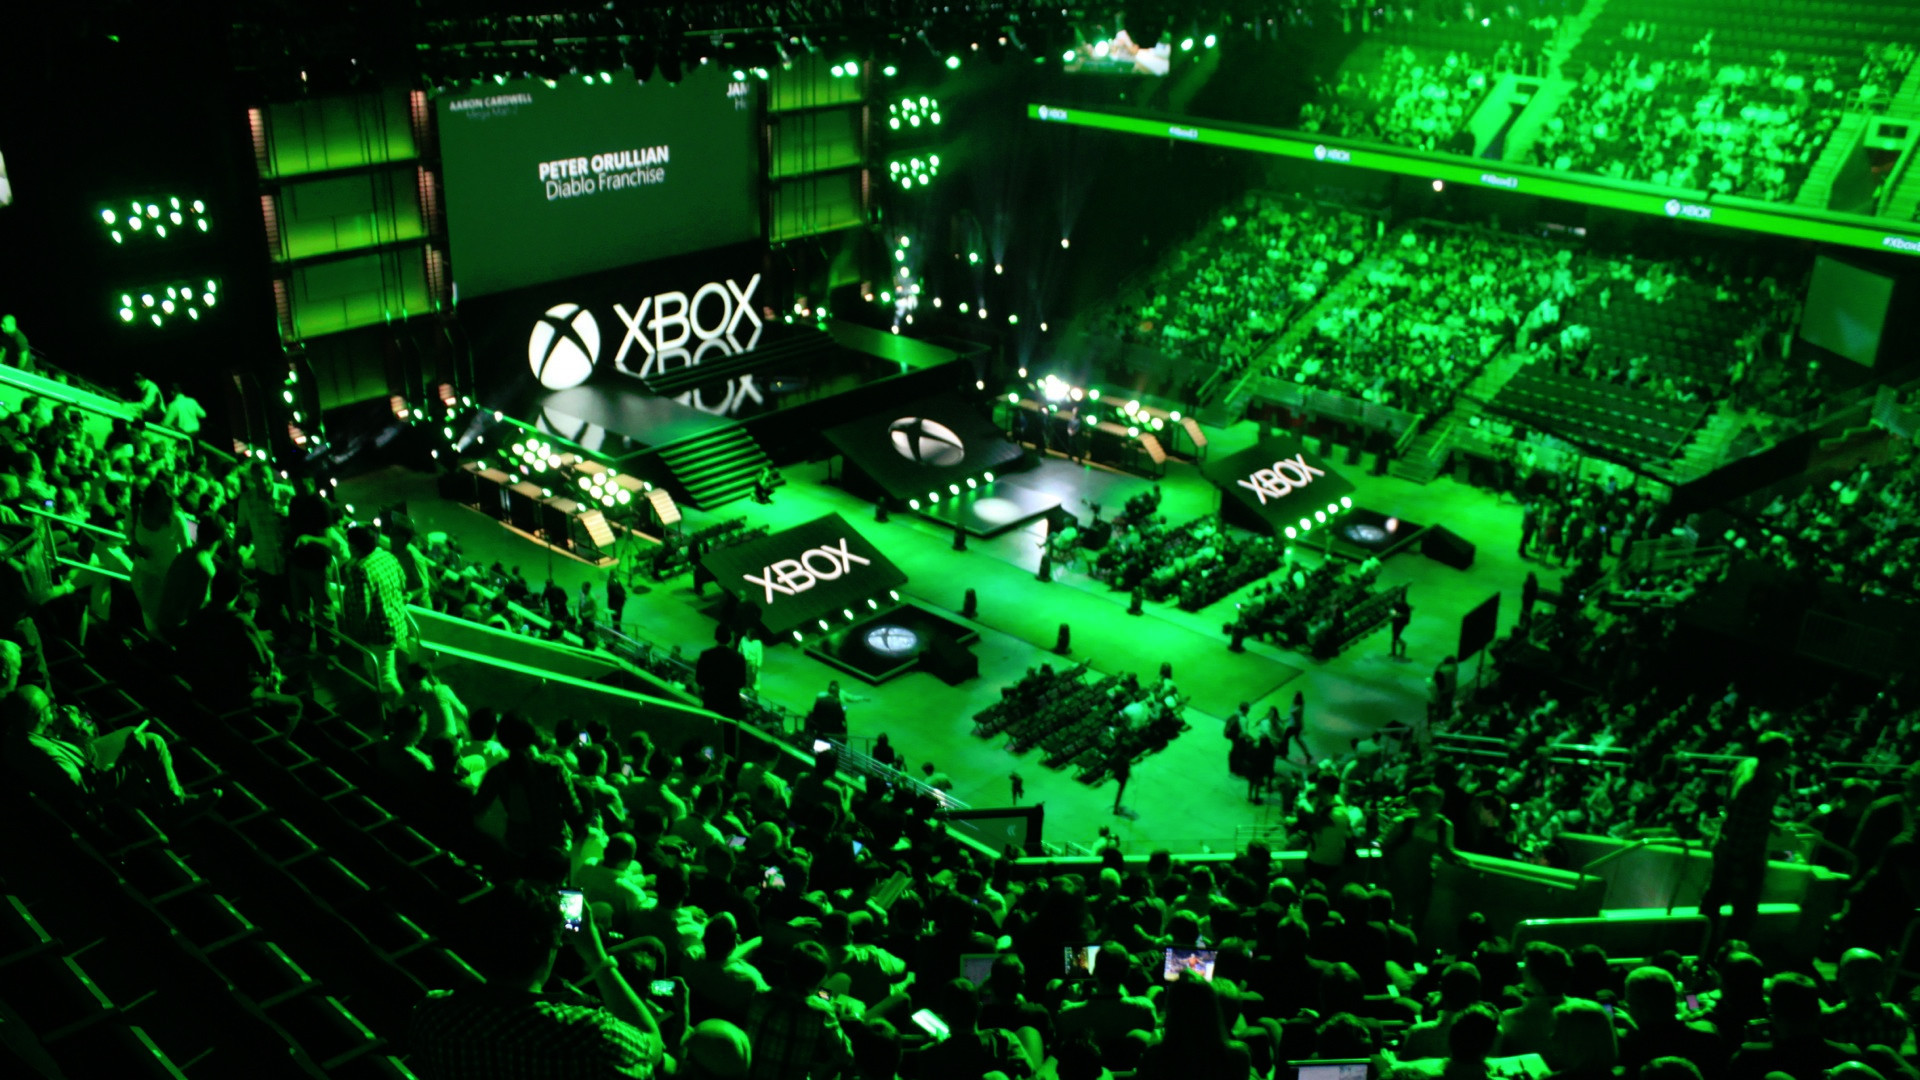 Xbox bethesda e3 2021 showcase predictions feat